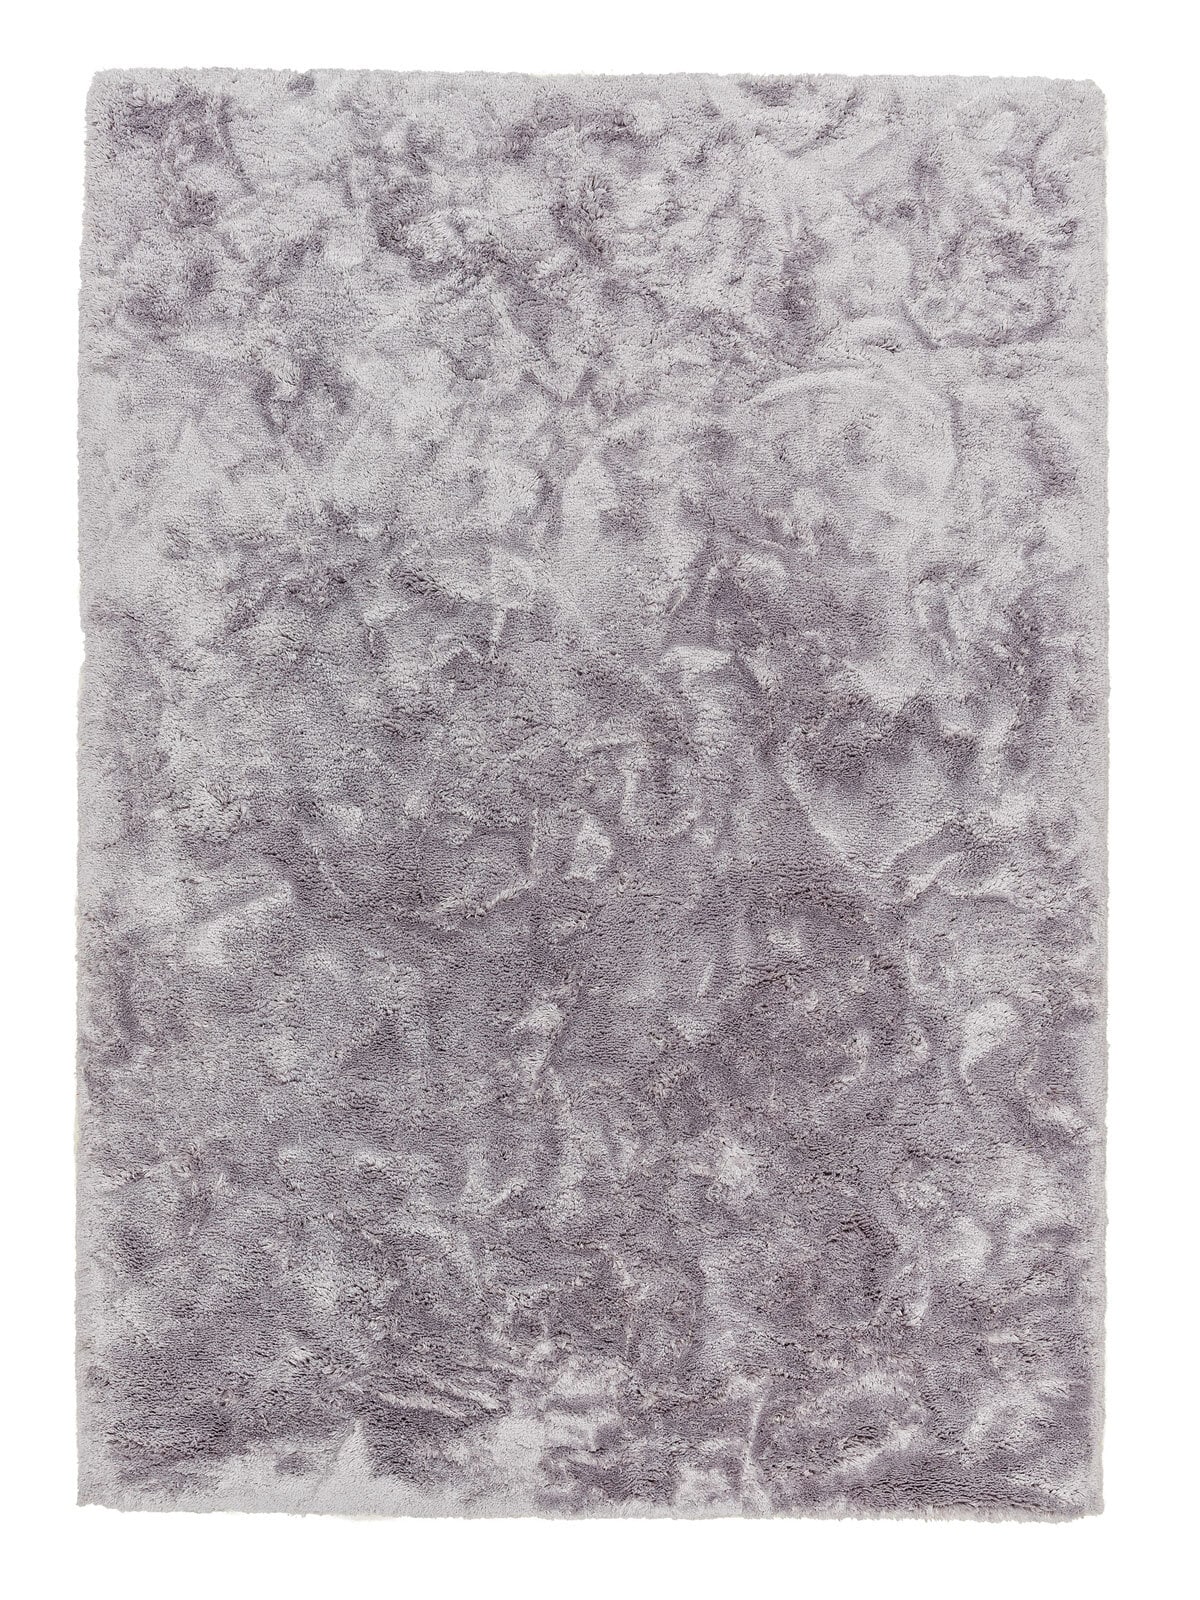 SCHÖNER WOHNEN-Kollektion Hochflorteppich HARMONY 90 x 160 cm silberfarbig